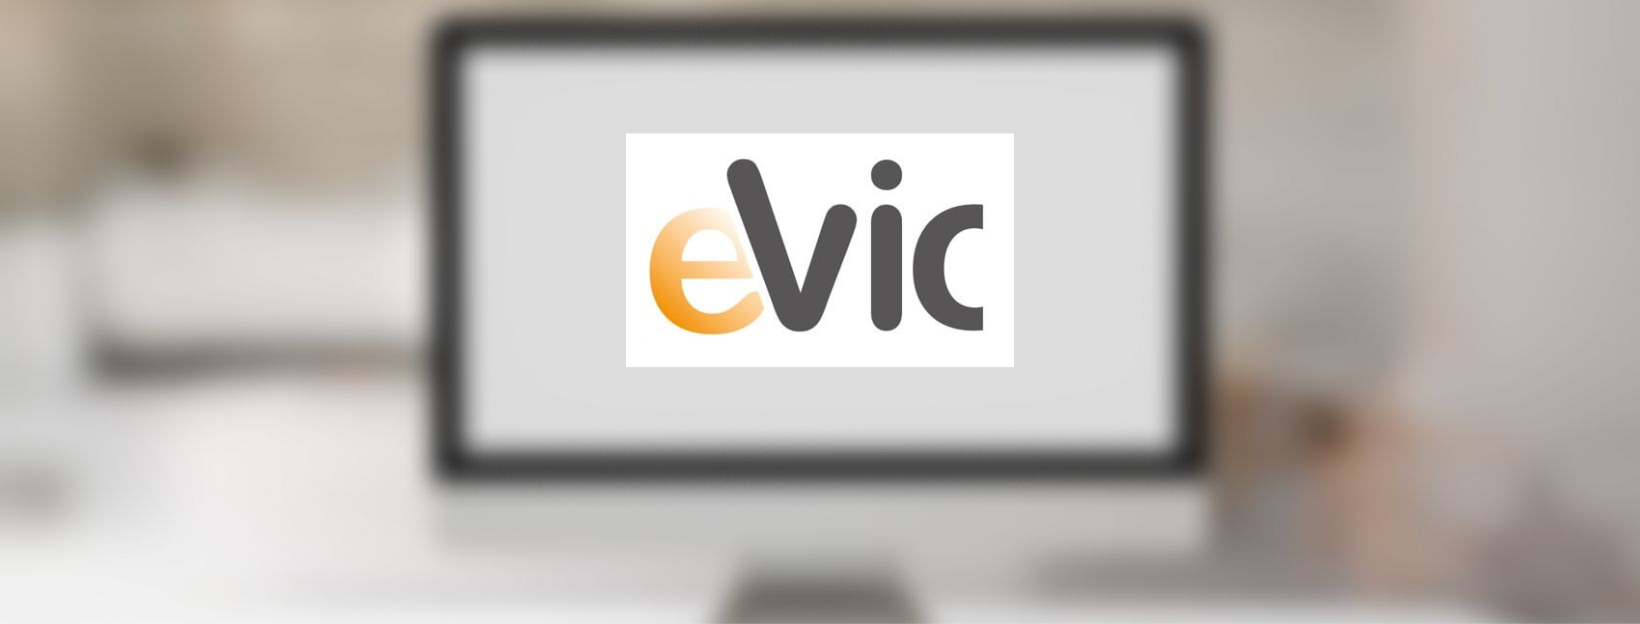 Nou projecte de SEO per EVIC CINC SERVEI